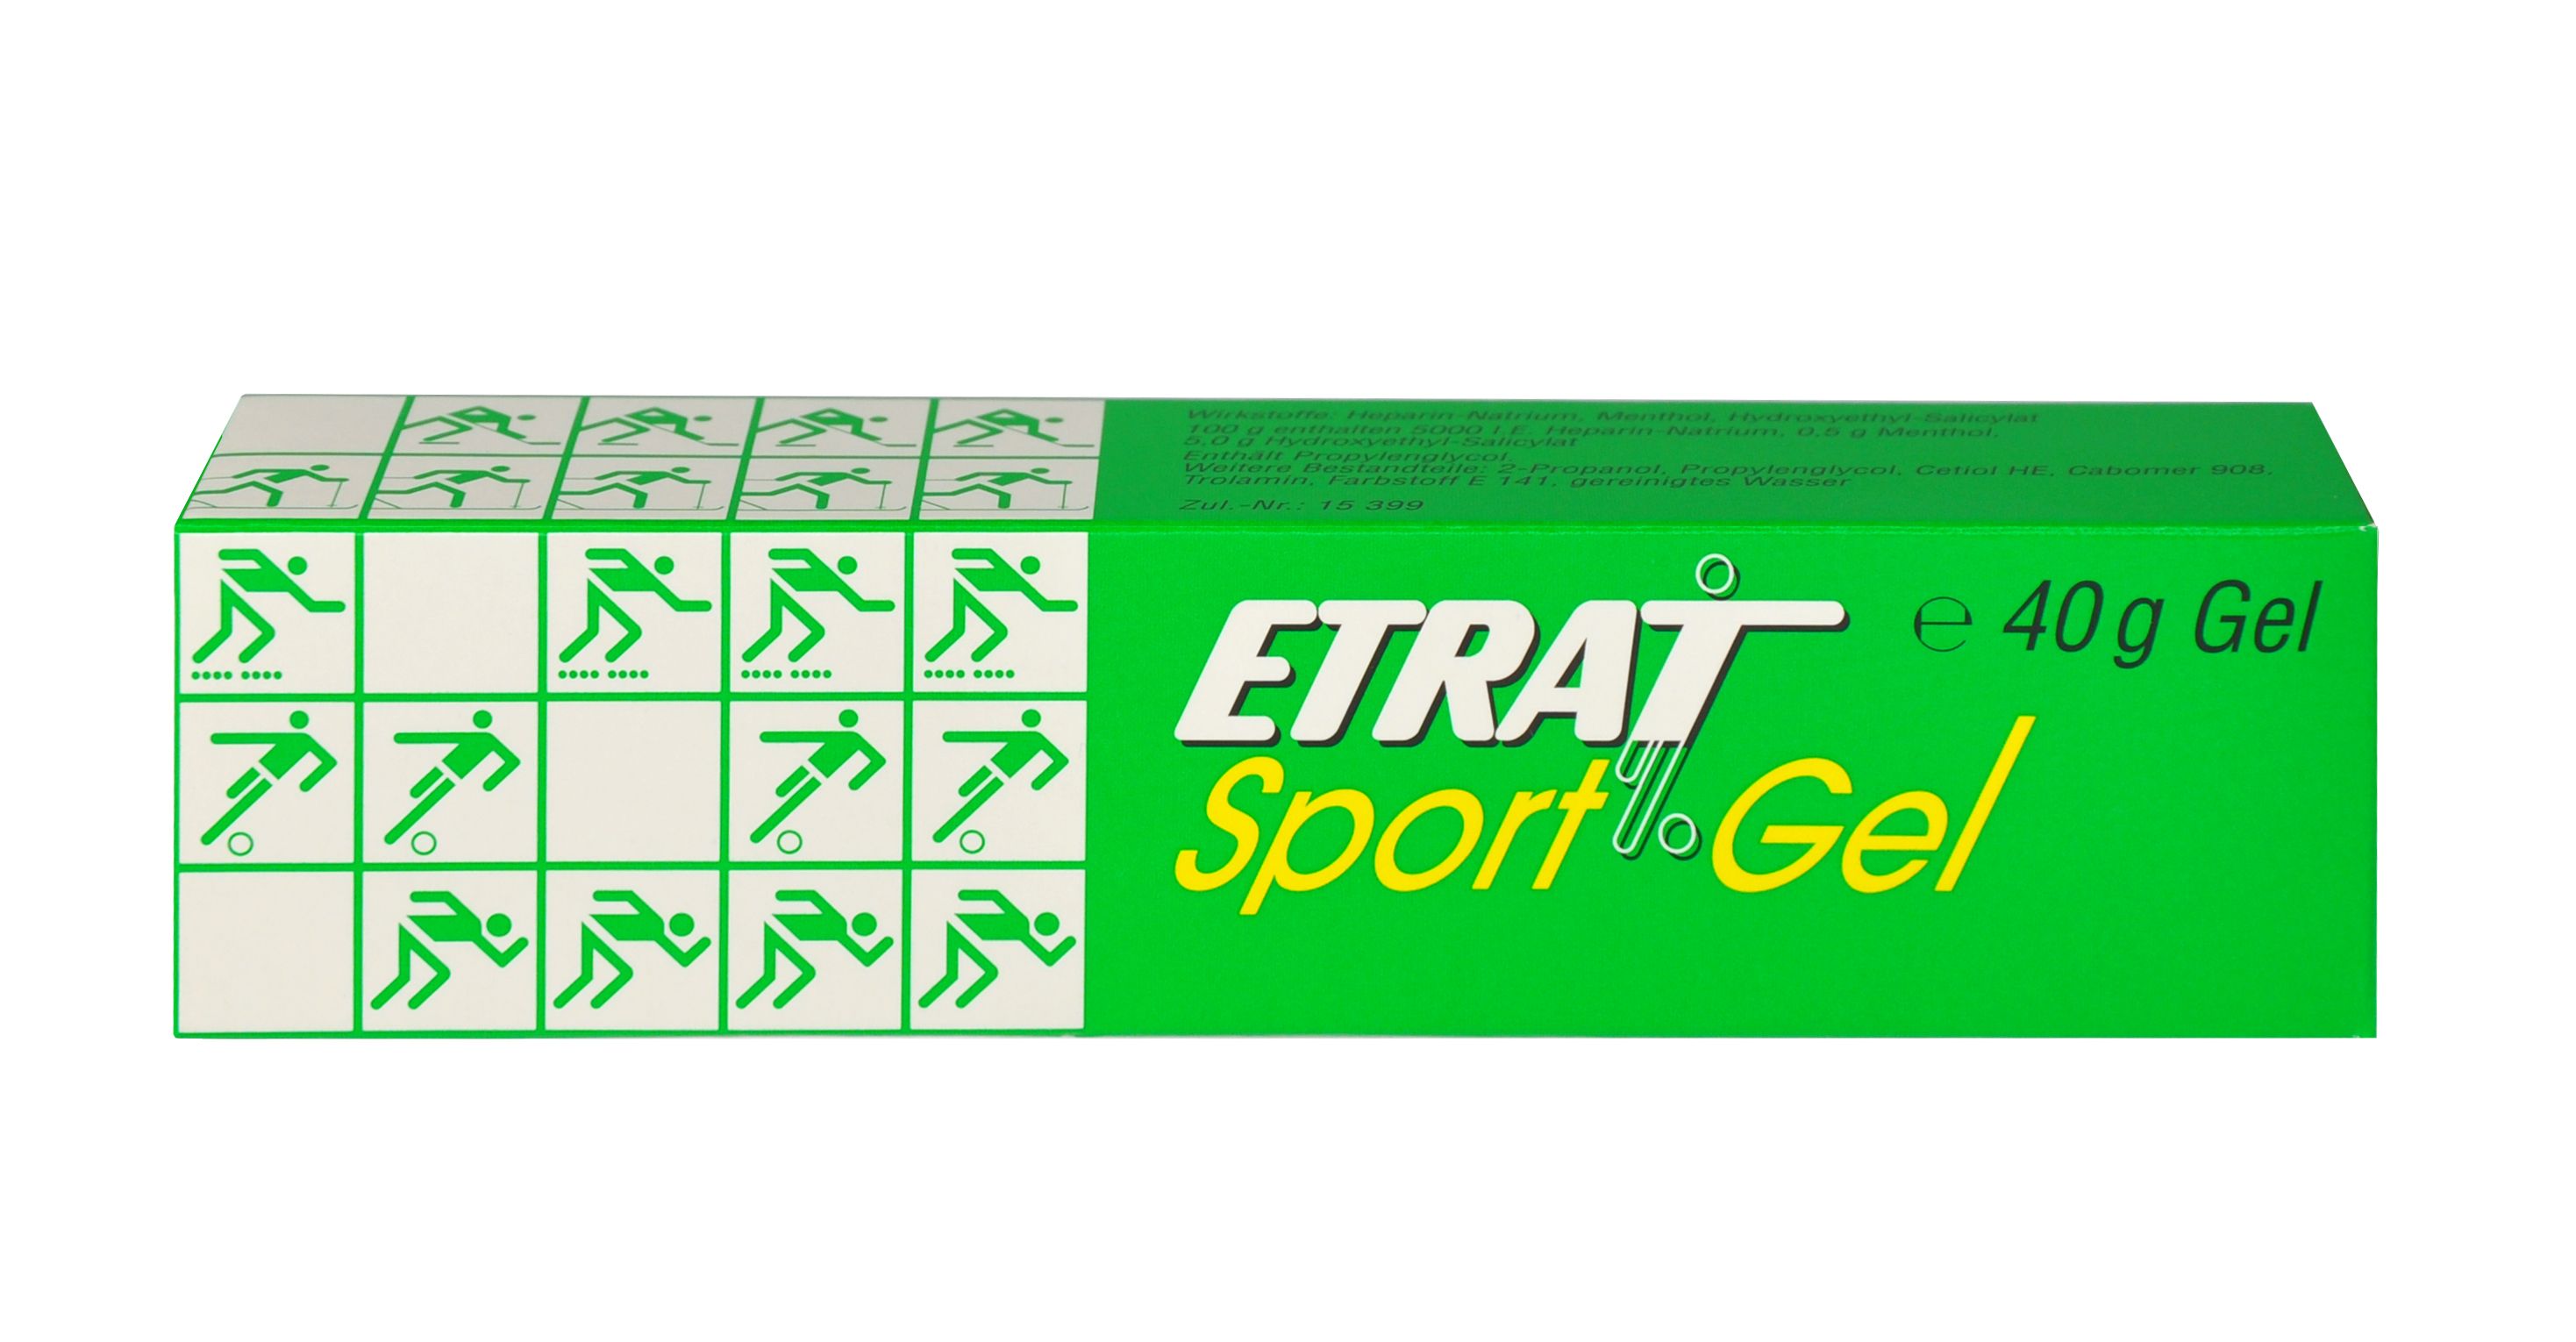 Abbildung Etrat - Gel